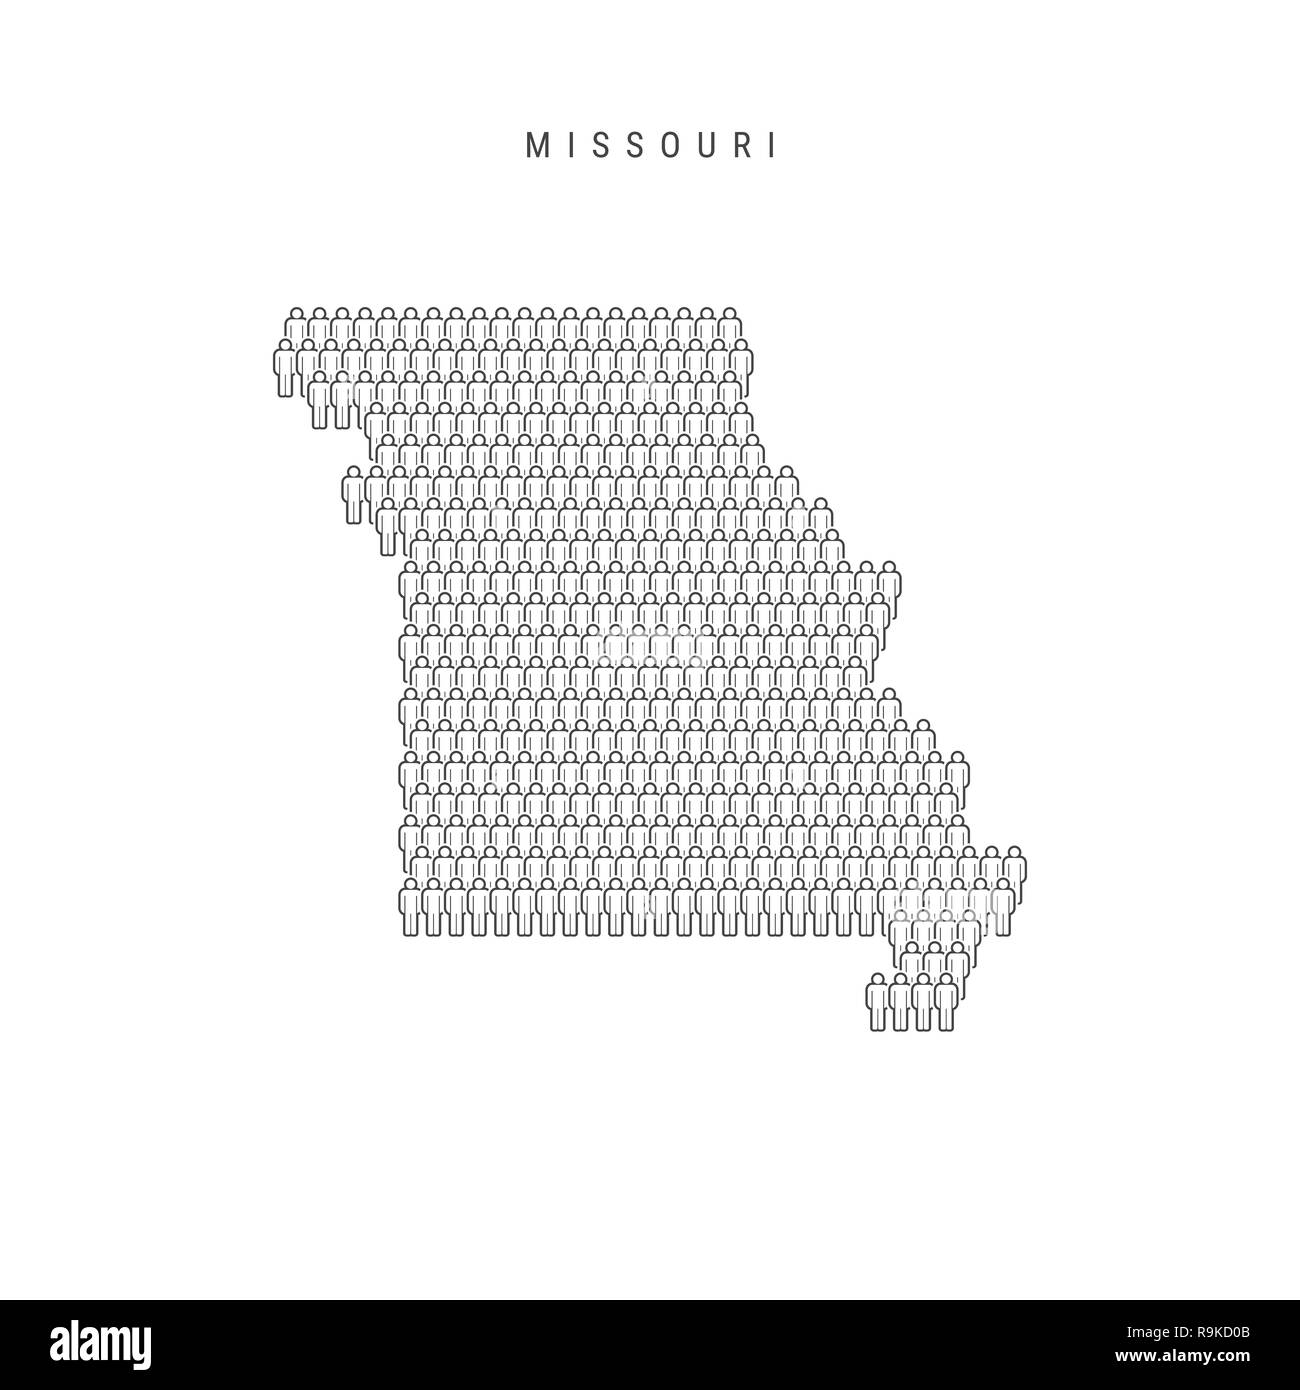 Leute Karte von Missouri, US-Staat. Stilisierte Silhouette, Leute in der Form einer Karte von Missouri. Missouri Bevölkerung. Abbildung isoliert auf W Stockfoto